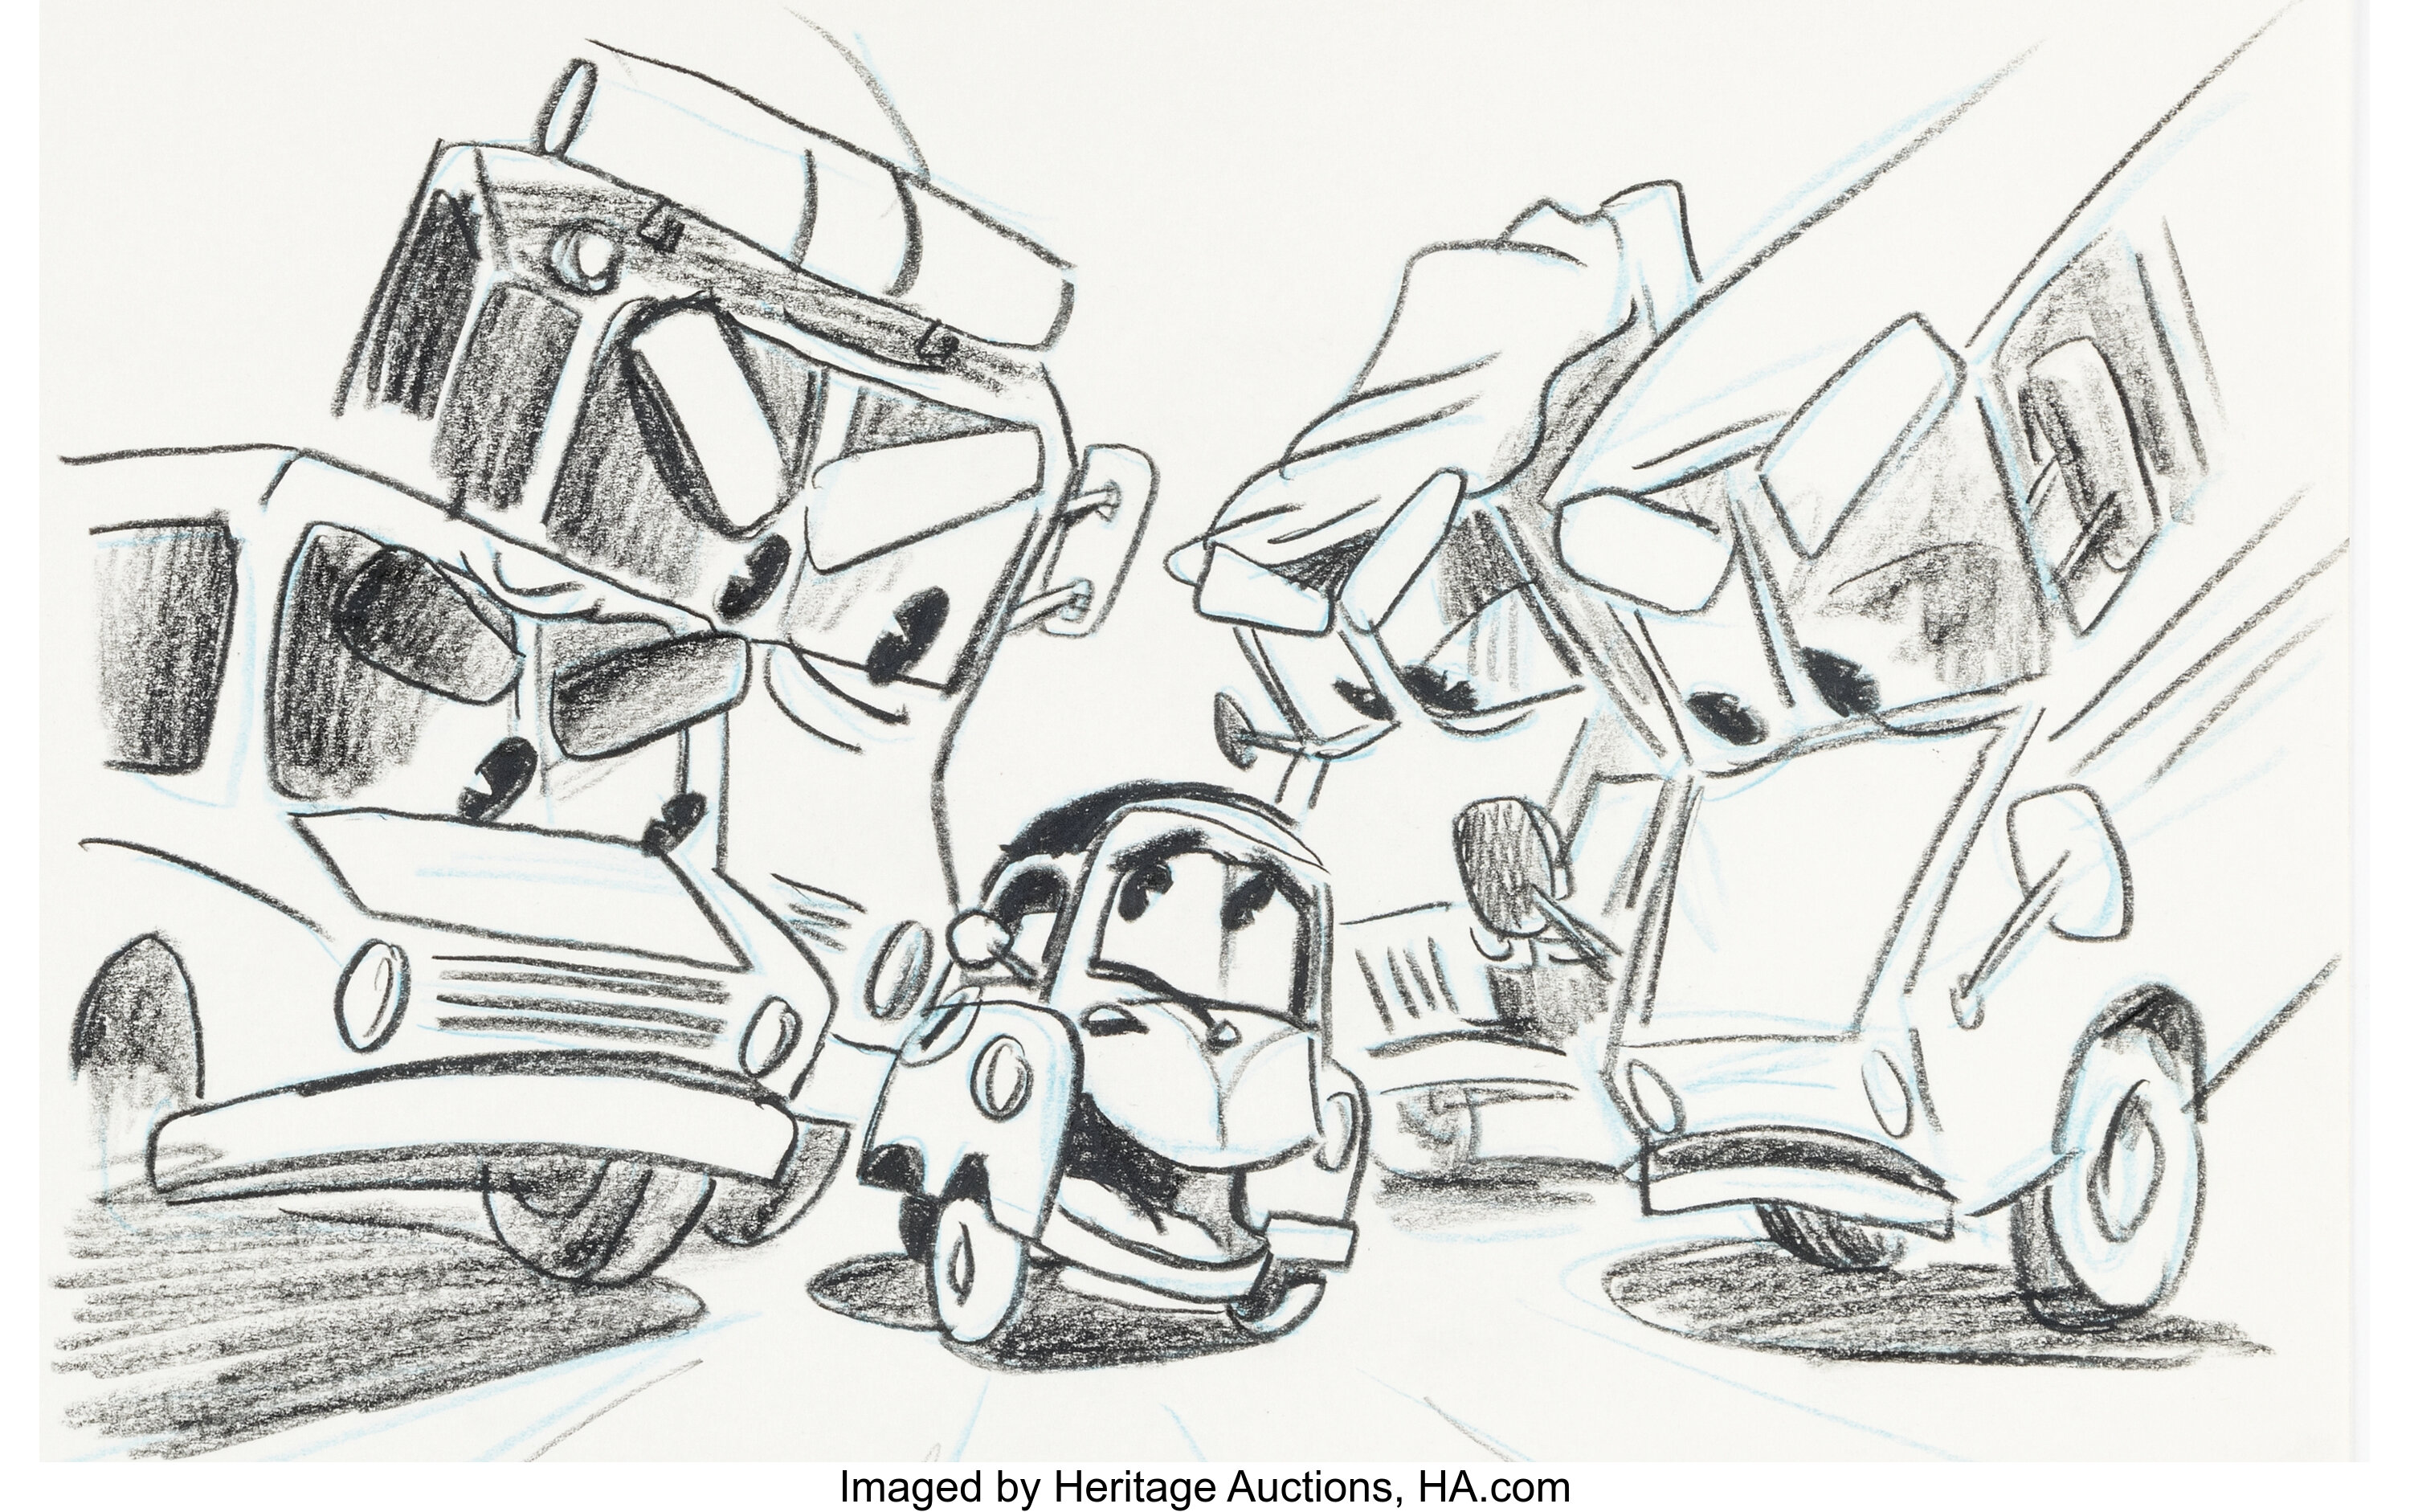 Artwork images: Disney Presents a PIXAR film: Cars - PS2 (1 of 5)